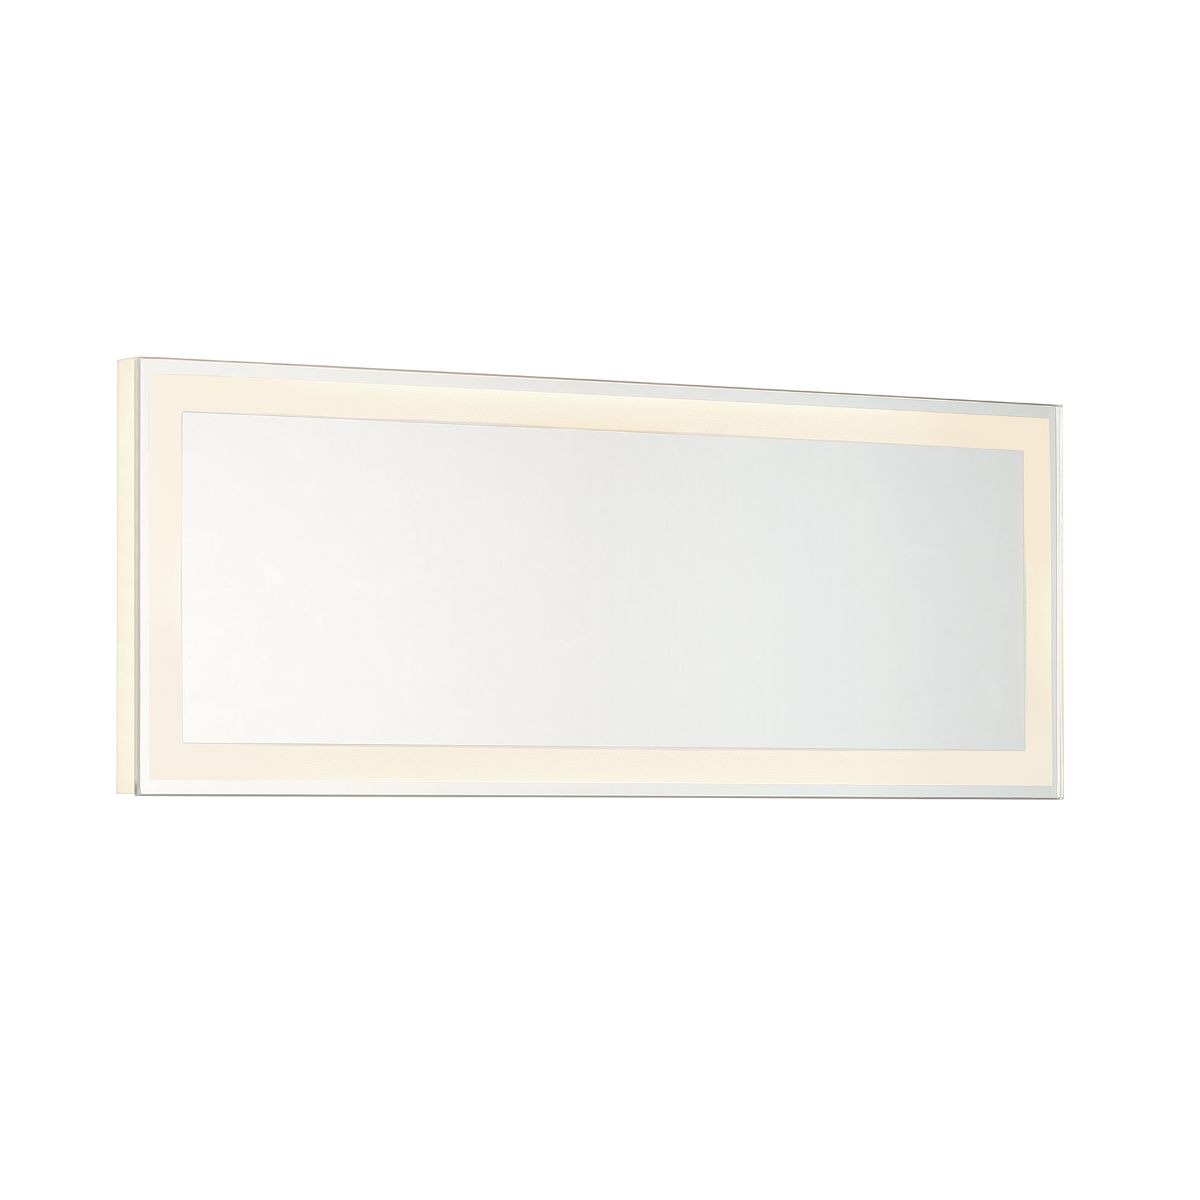 18 In. X 6.75 In. LED Vanity & Bathroom Mirror